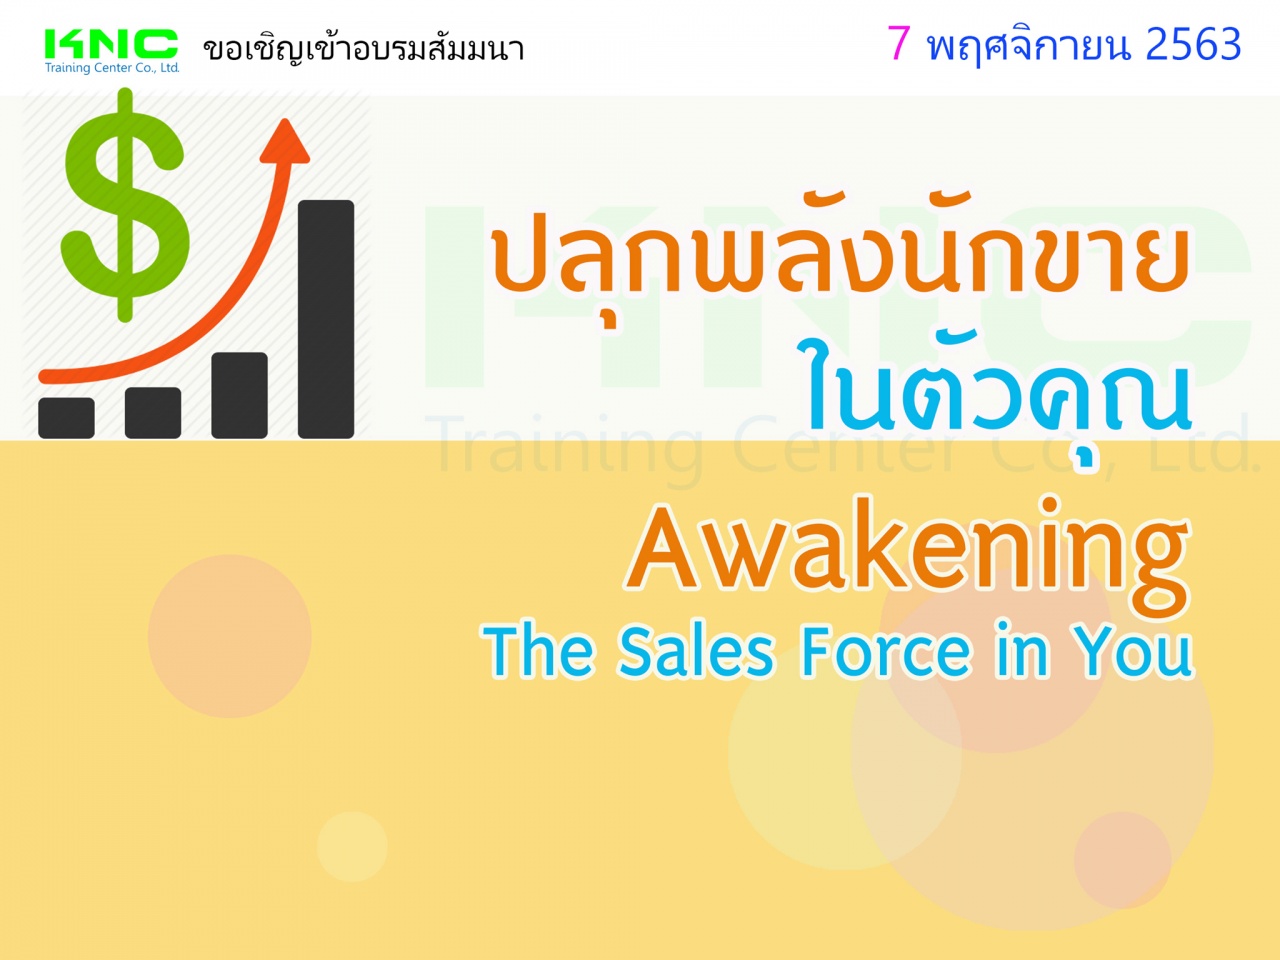 ปลุกพลังนักขายในตัวคุณ (Awakening The Sales Force in You)